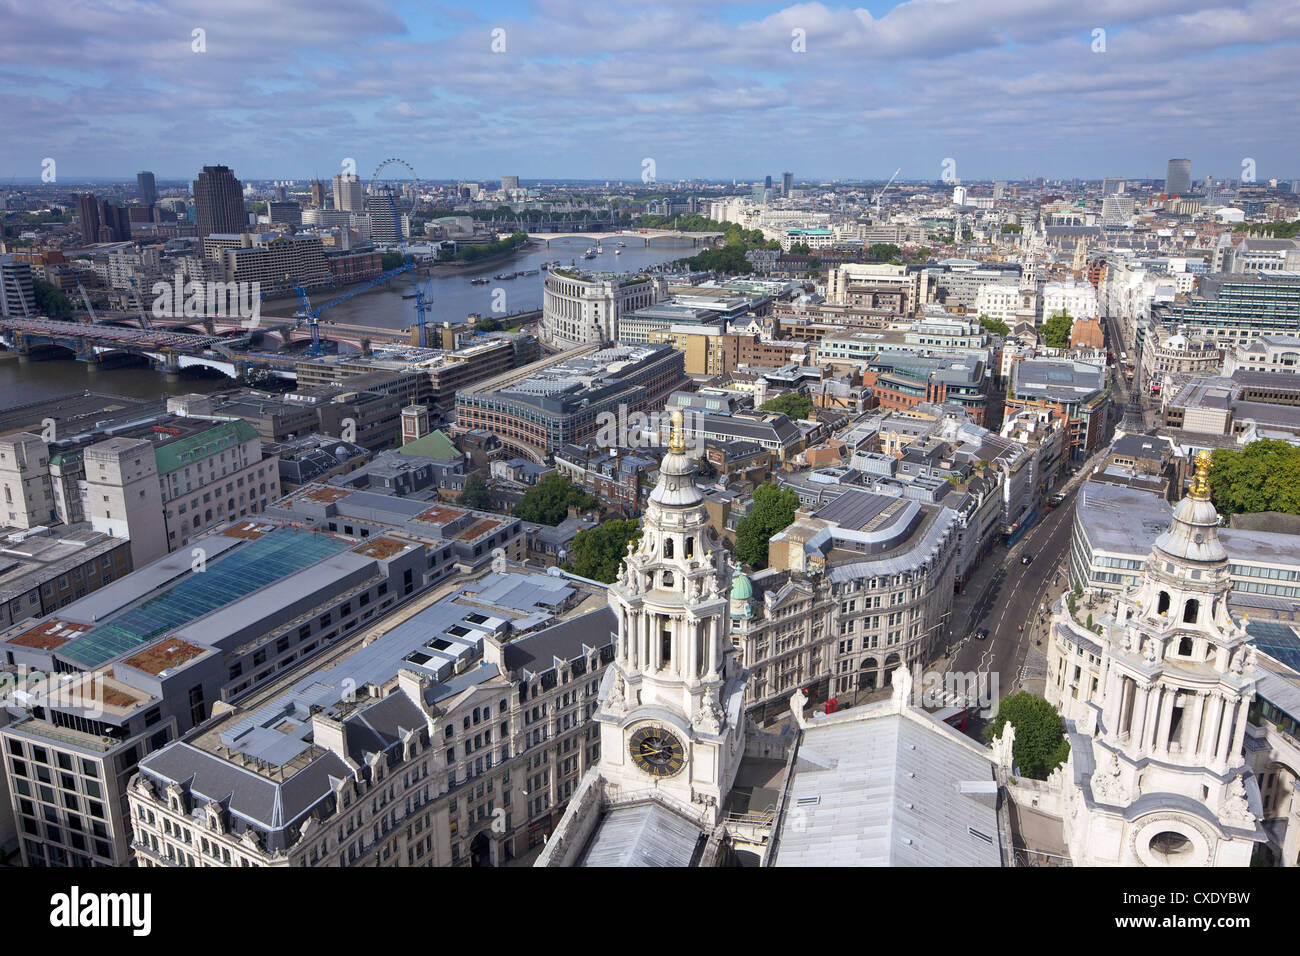 Vue aérienne de Londres prises à partir de la galerie dorée de la Cathédrale St Paul, ville de Londres, Angleterre, Royaume-Uni, Europe Banque D'Images